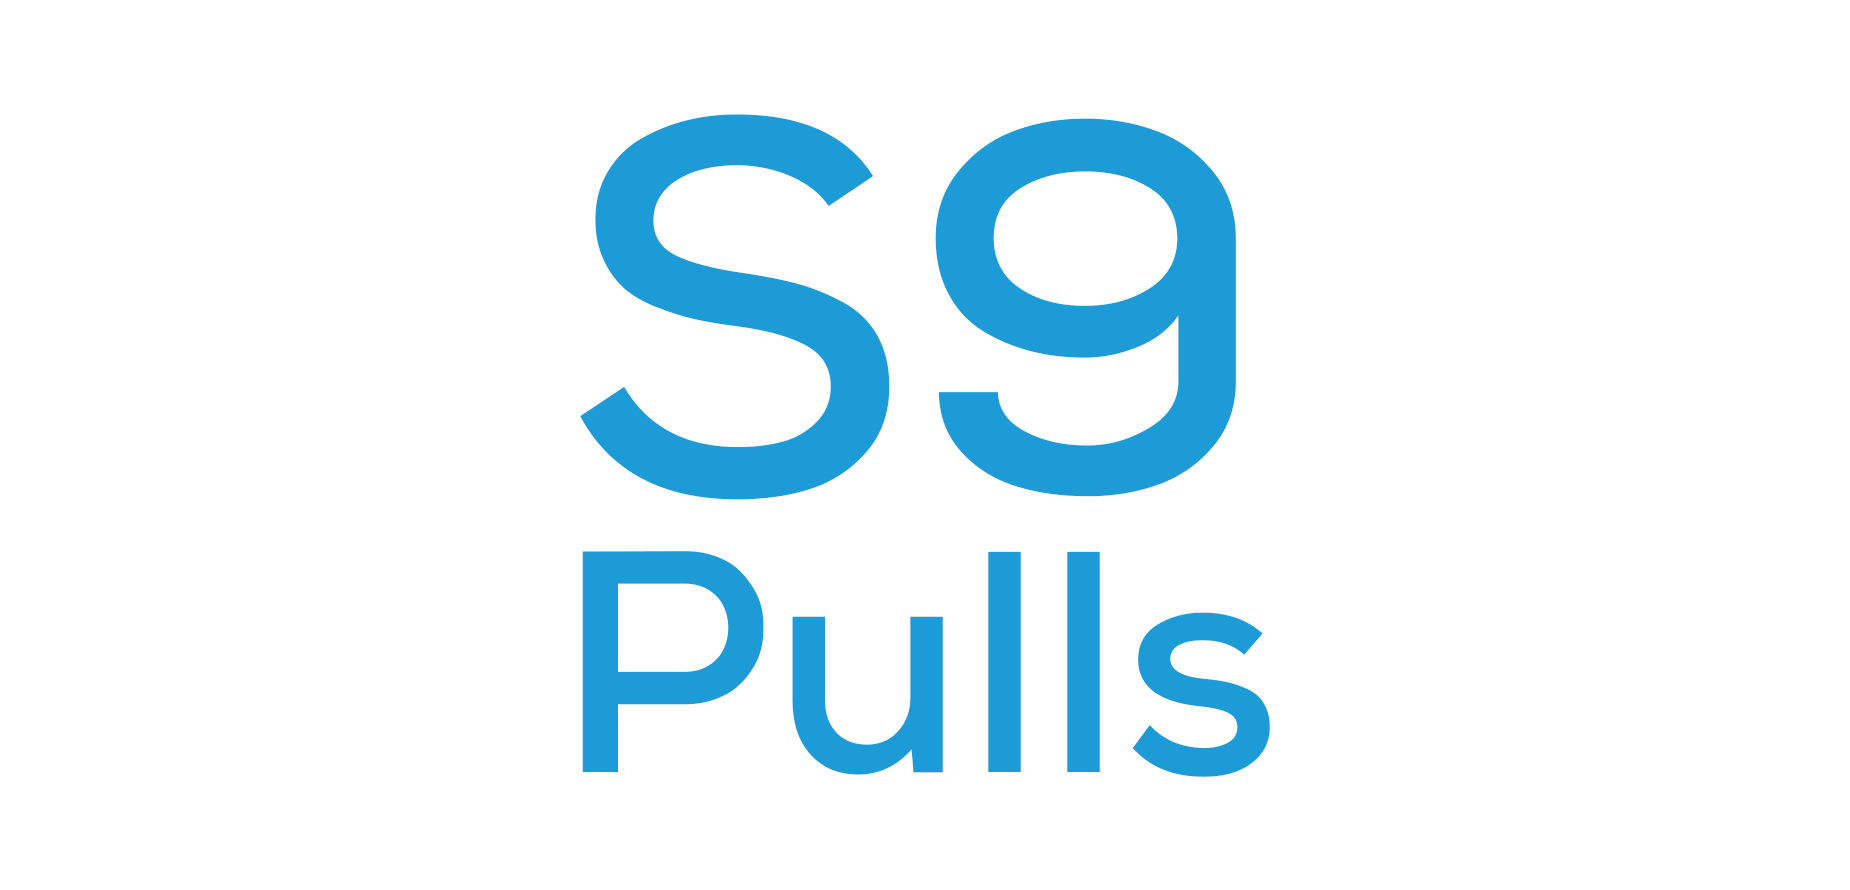 Galaxy S9 Pulls